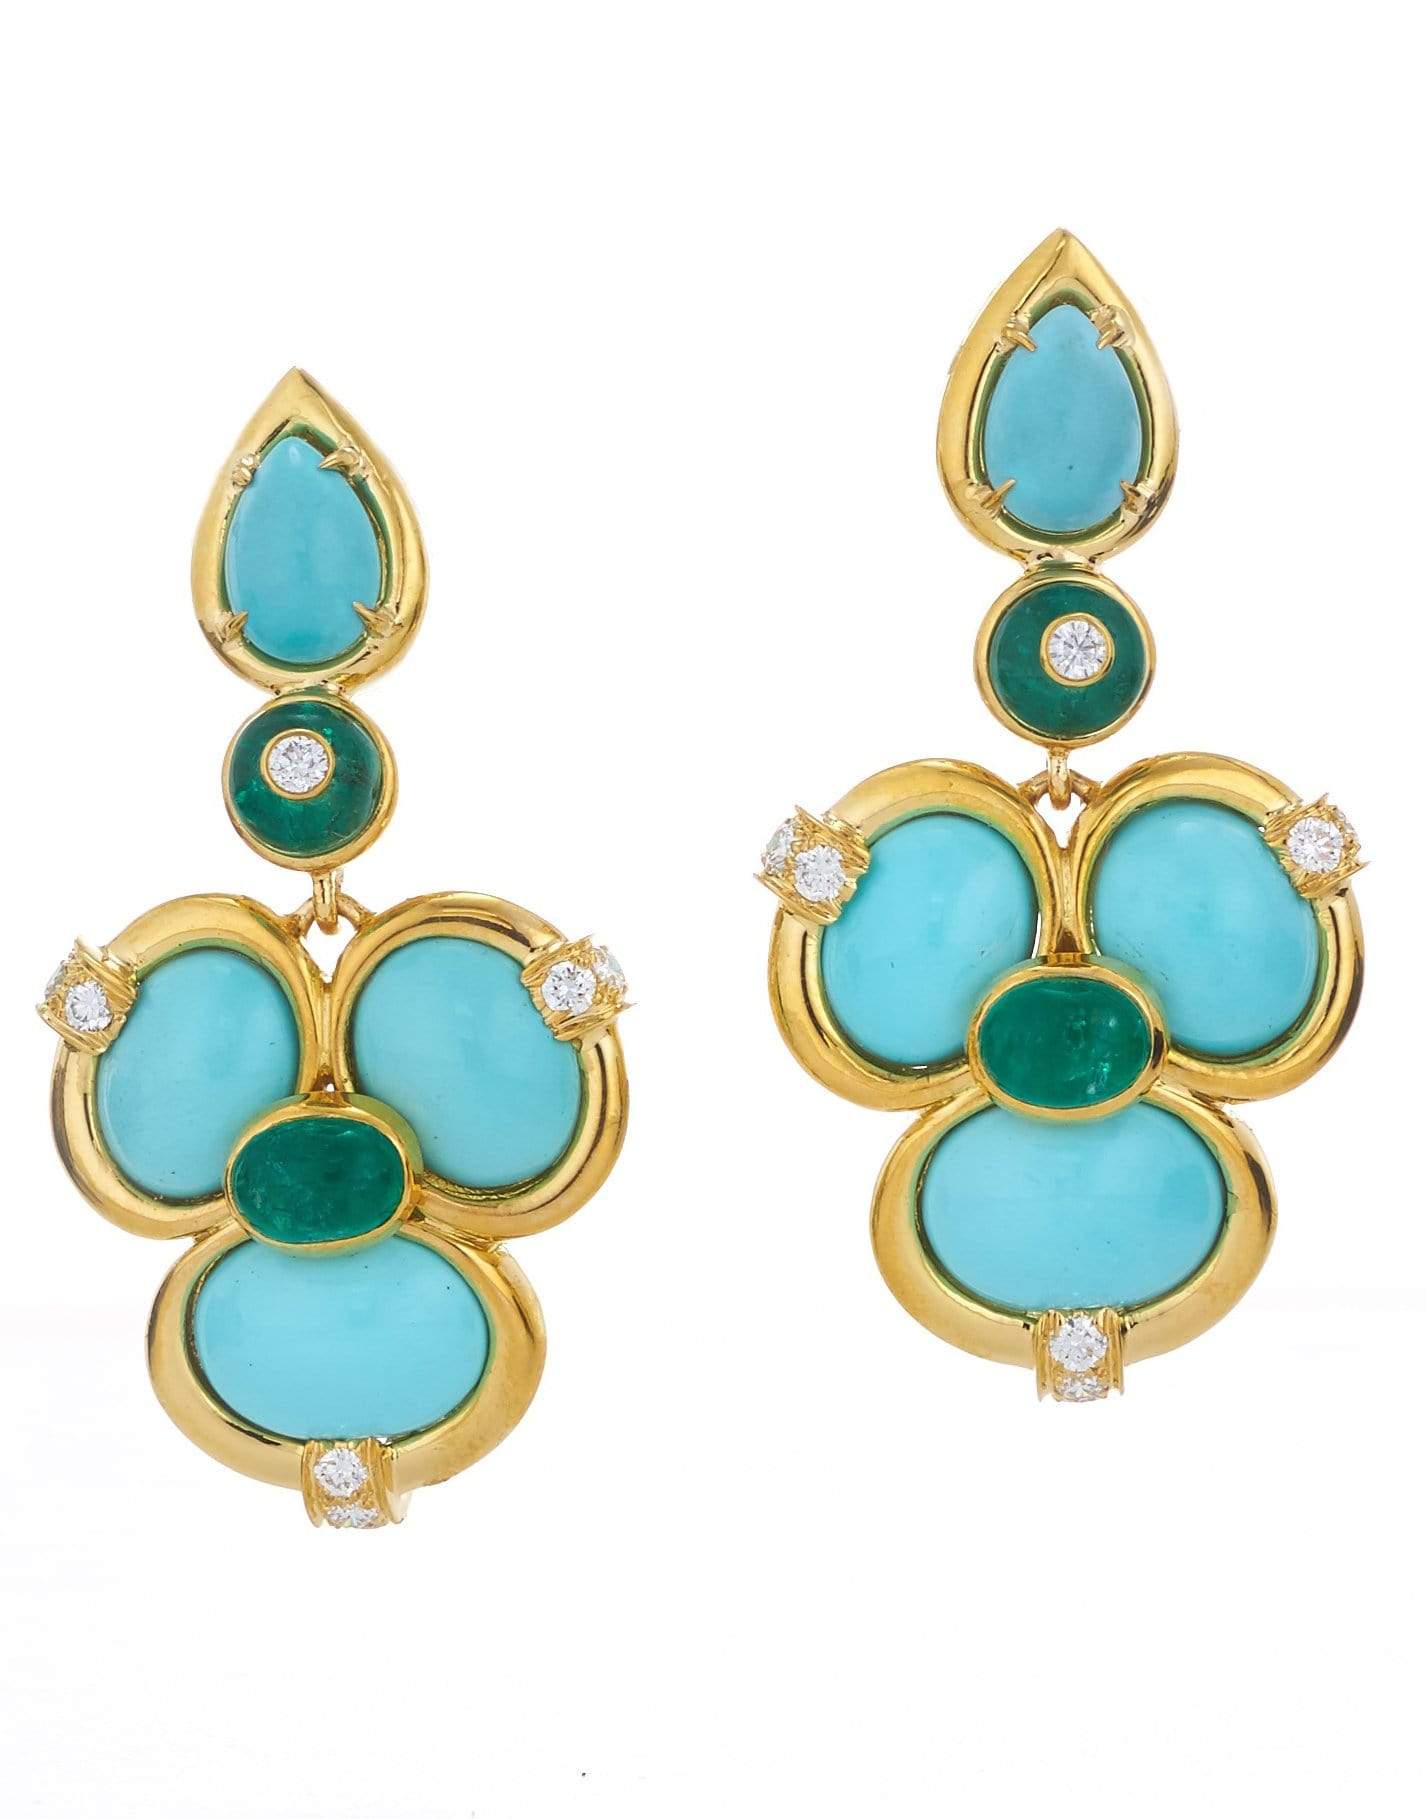 DAVID WEBB-Turquoise and Emerald Shangri-La Earrings-YELLOW GOLD